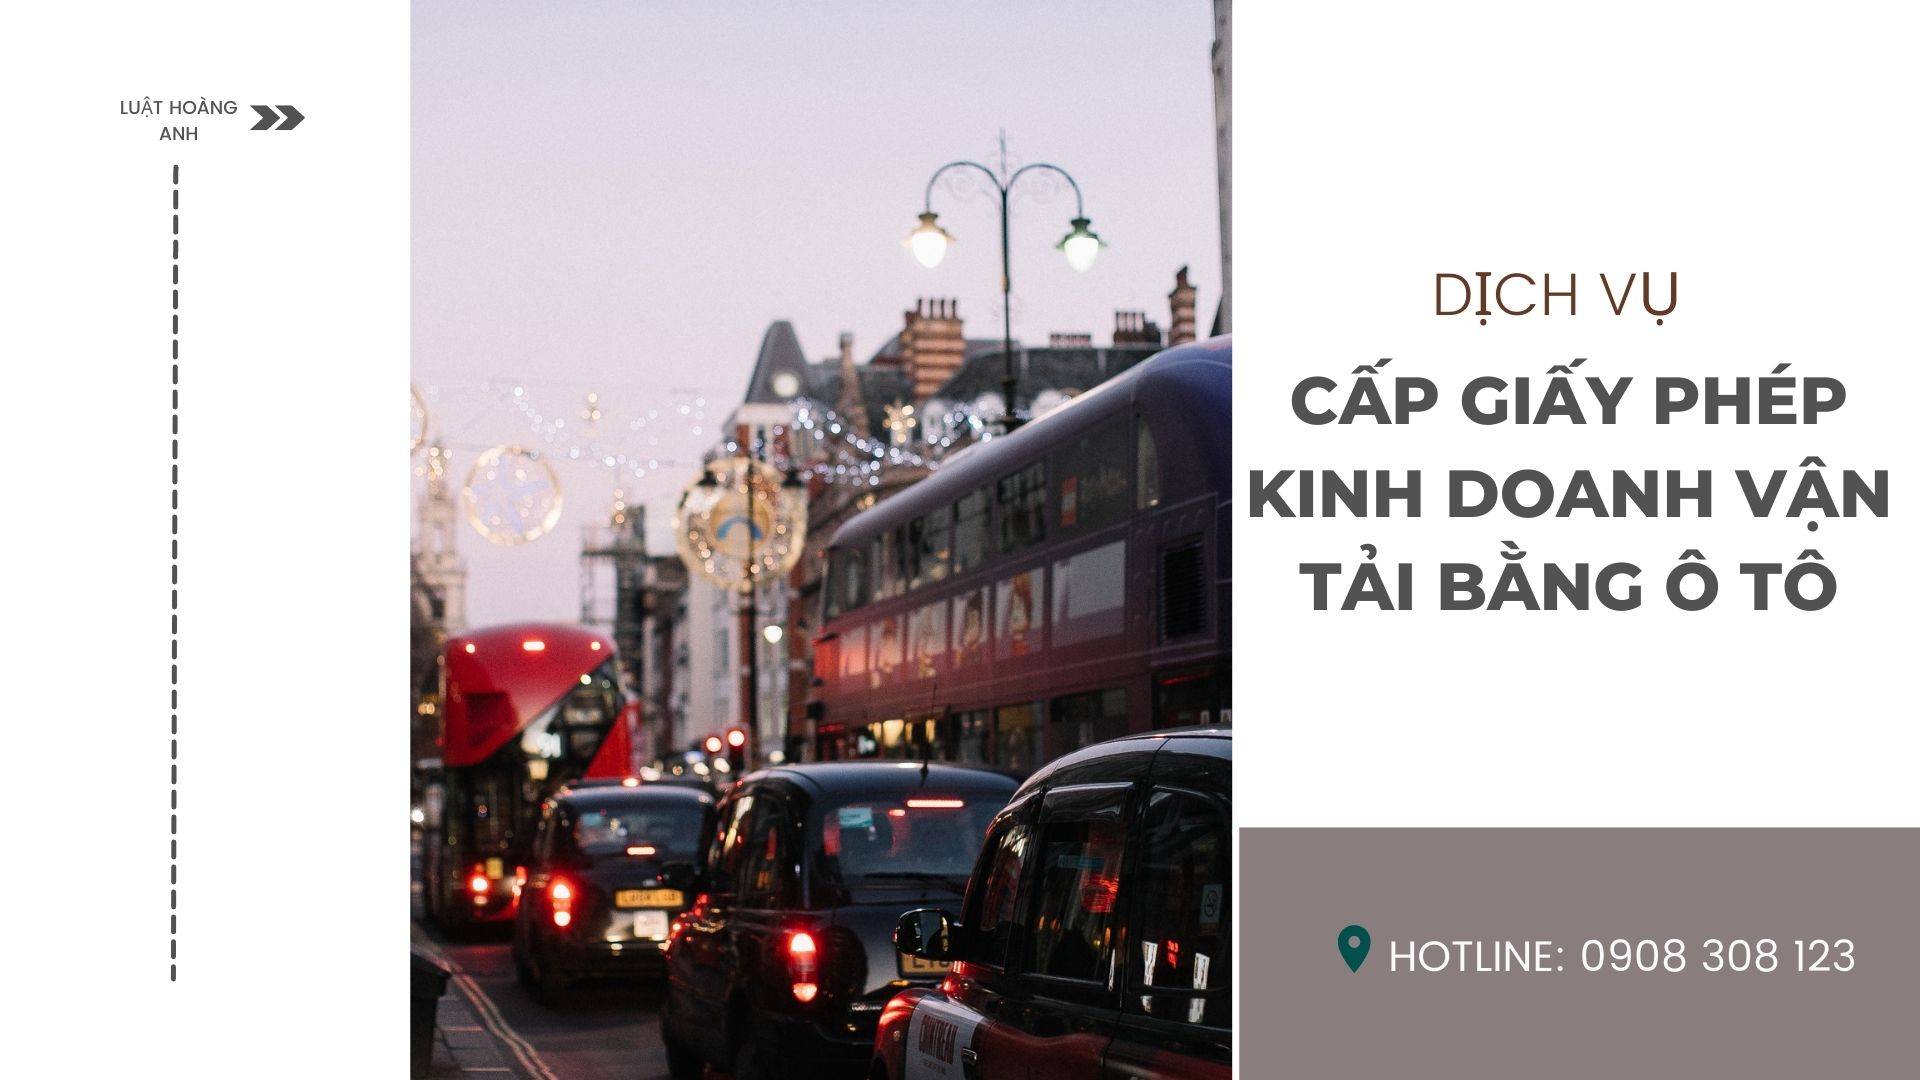 Dịch vụ cấp giấy phép kinh doanh vận tải bằng ô tô tại tỉnh Ninh Thuận